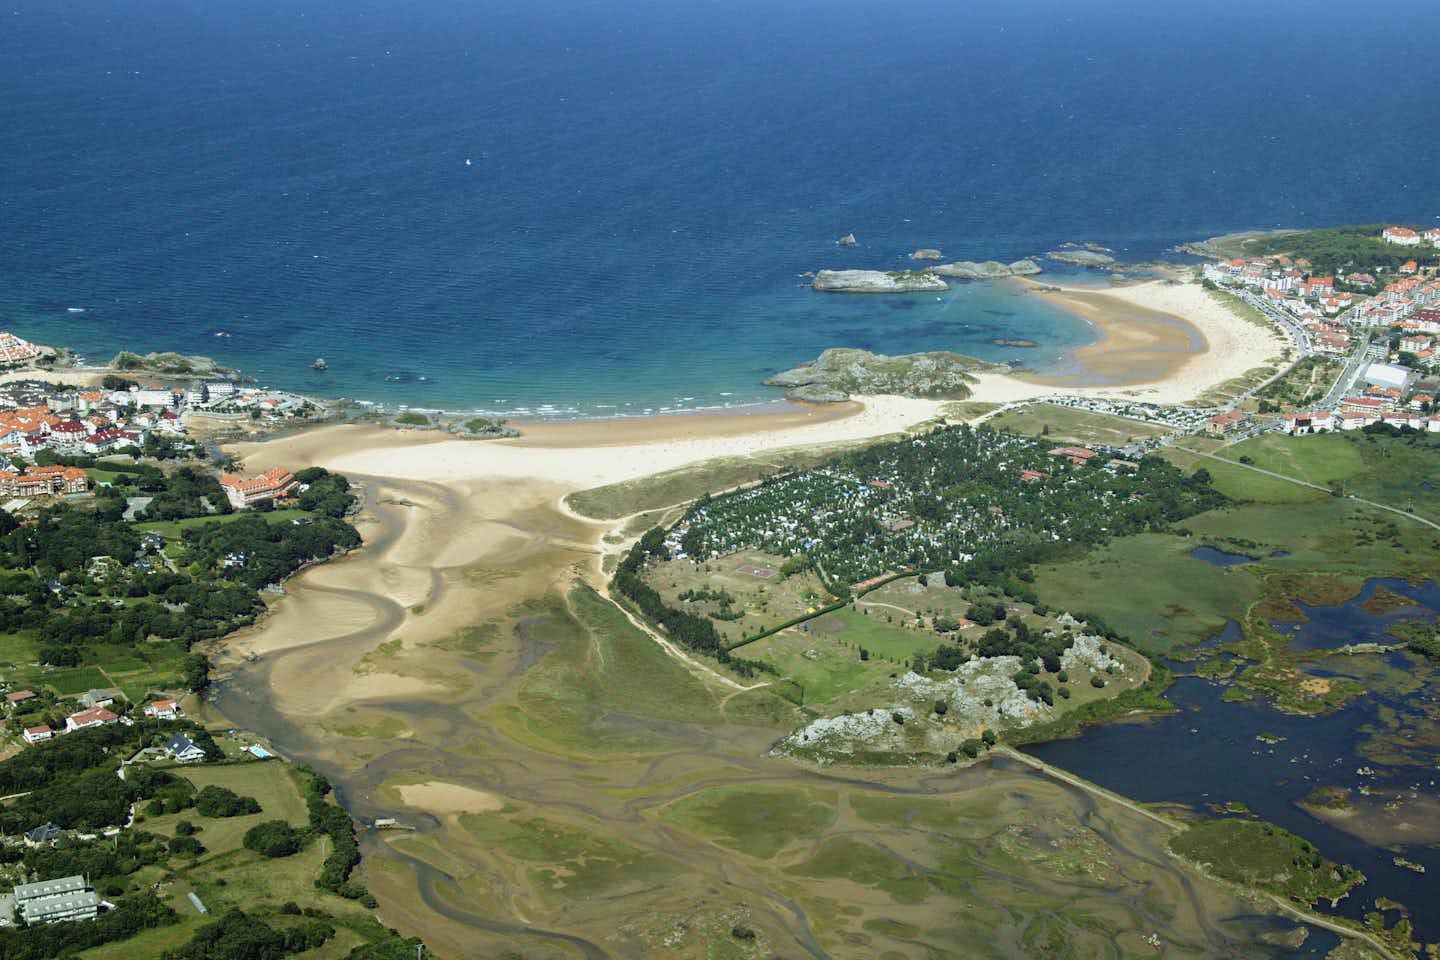 Camping Playa Joyel - Blick auf den Strand aus der Vogelperspektive